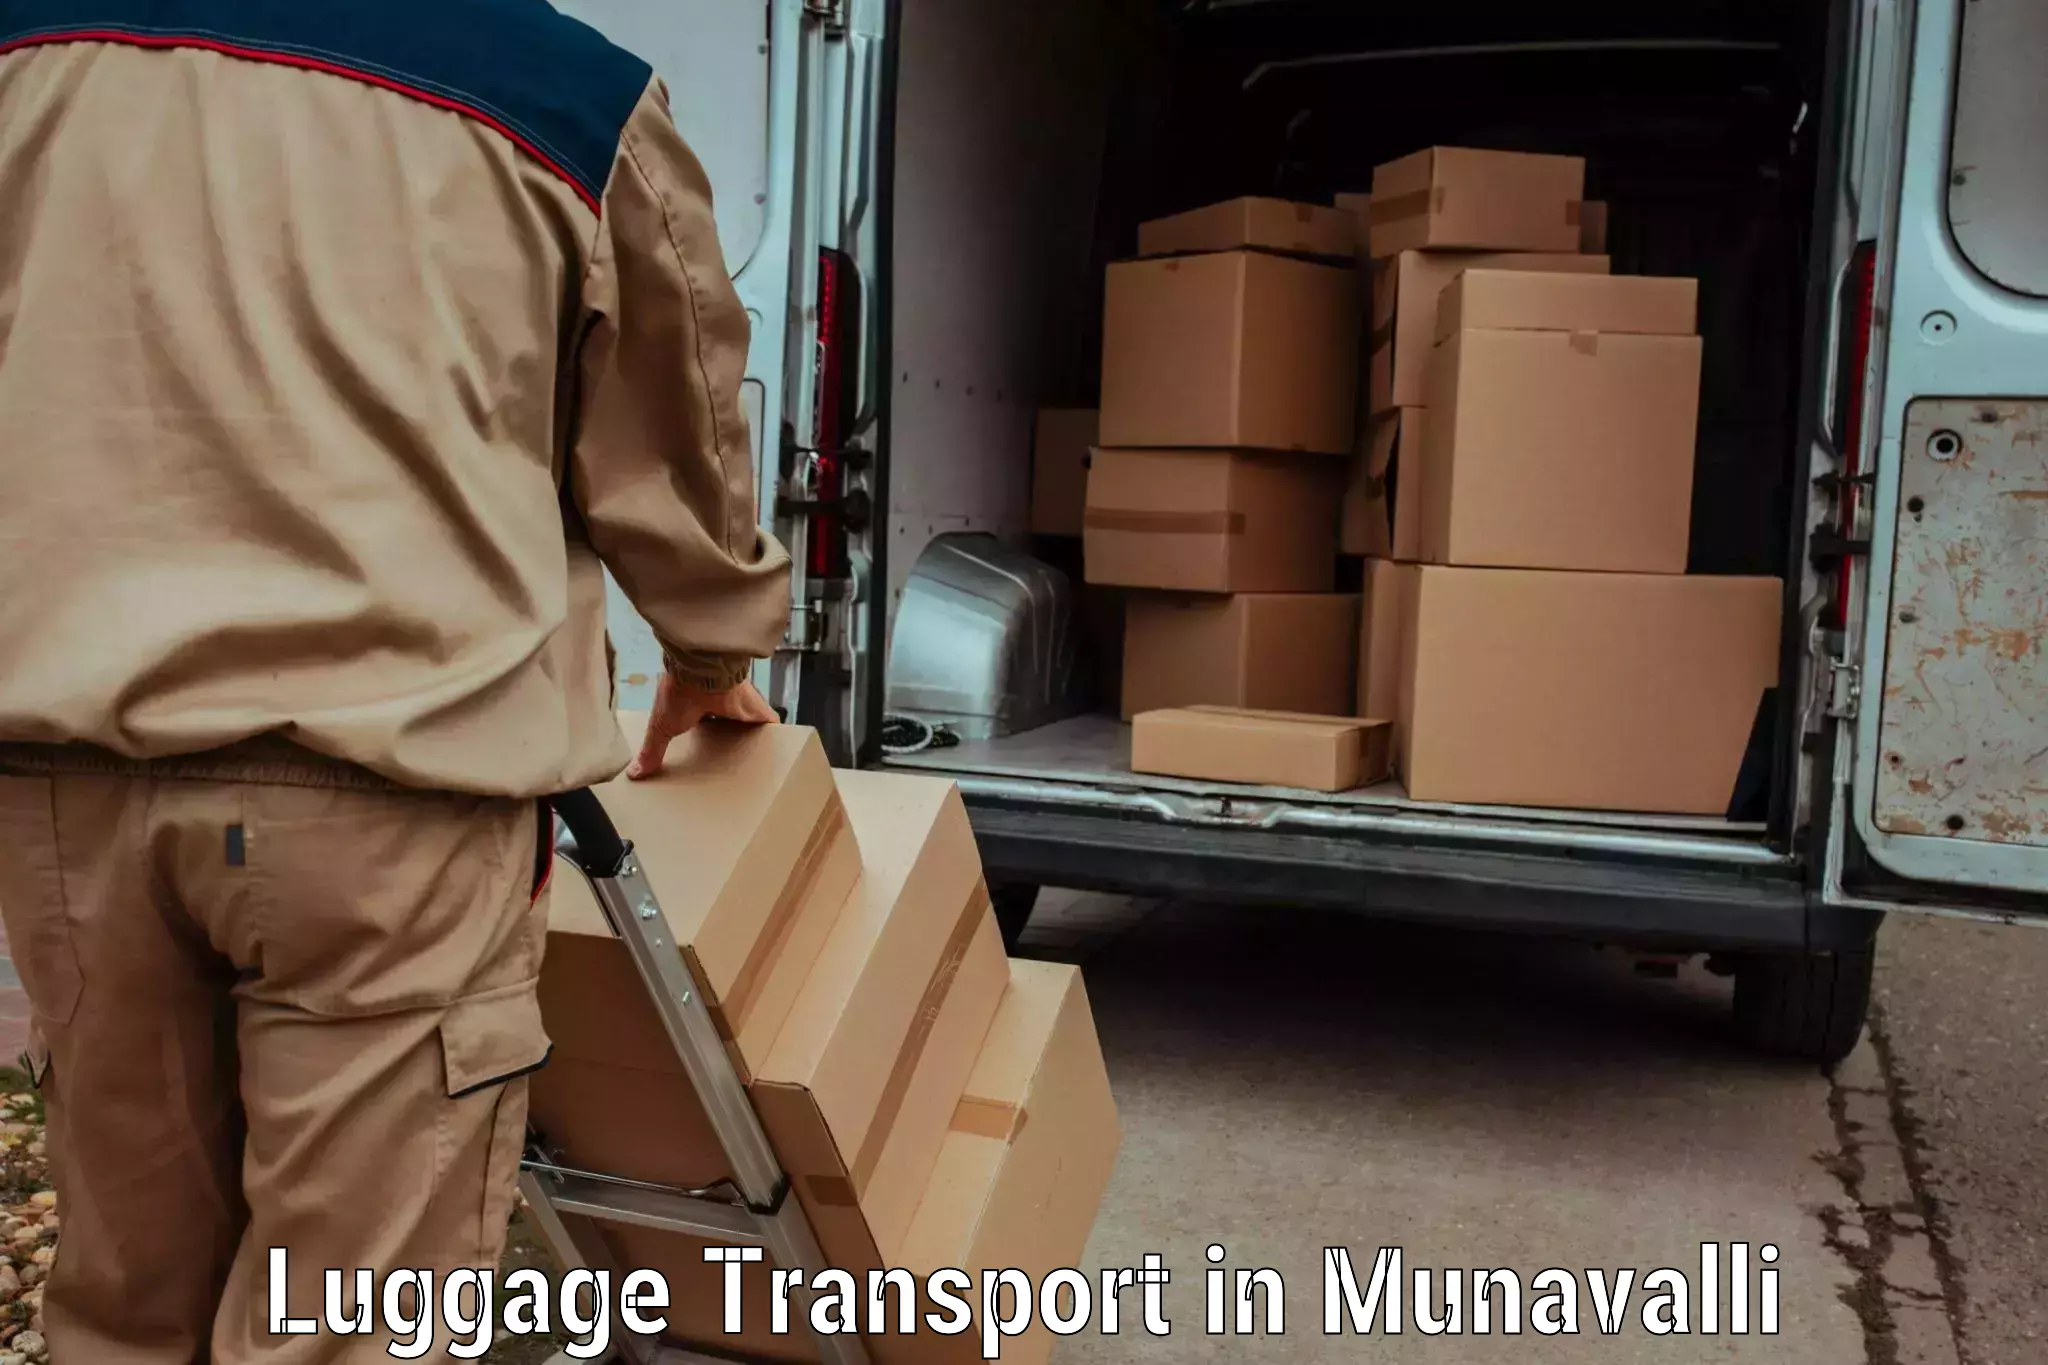 Express baggage shipping in Munavalli